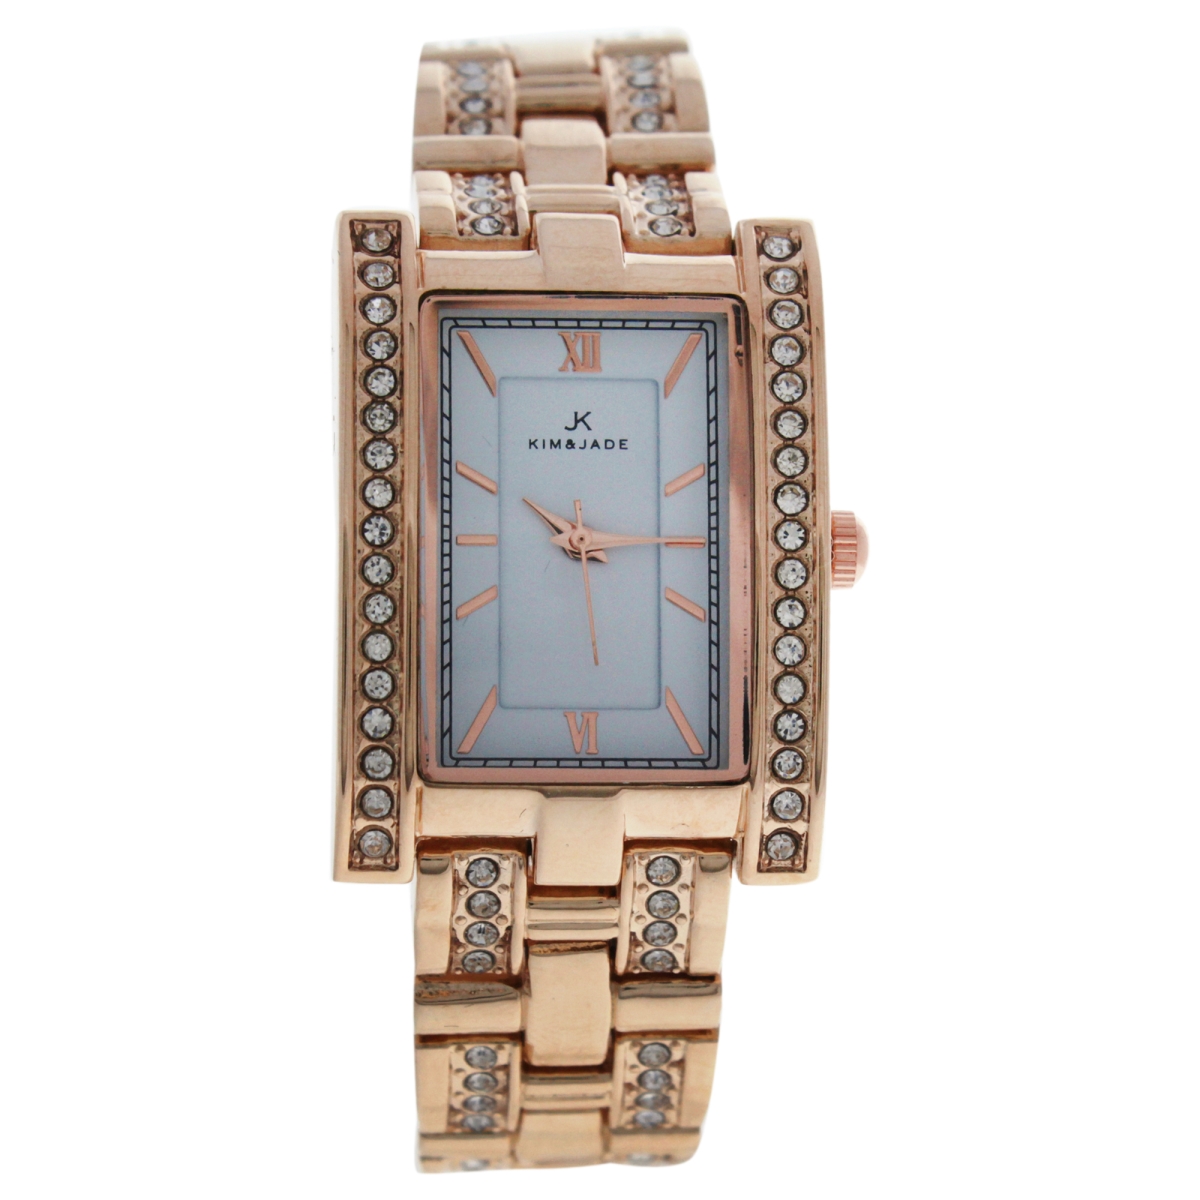 W-wat-1501 Rose Gold Stainless Steel Bracelet Watch For Women - 2060l-gpw